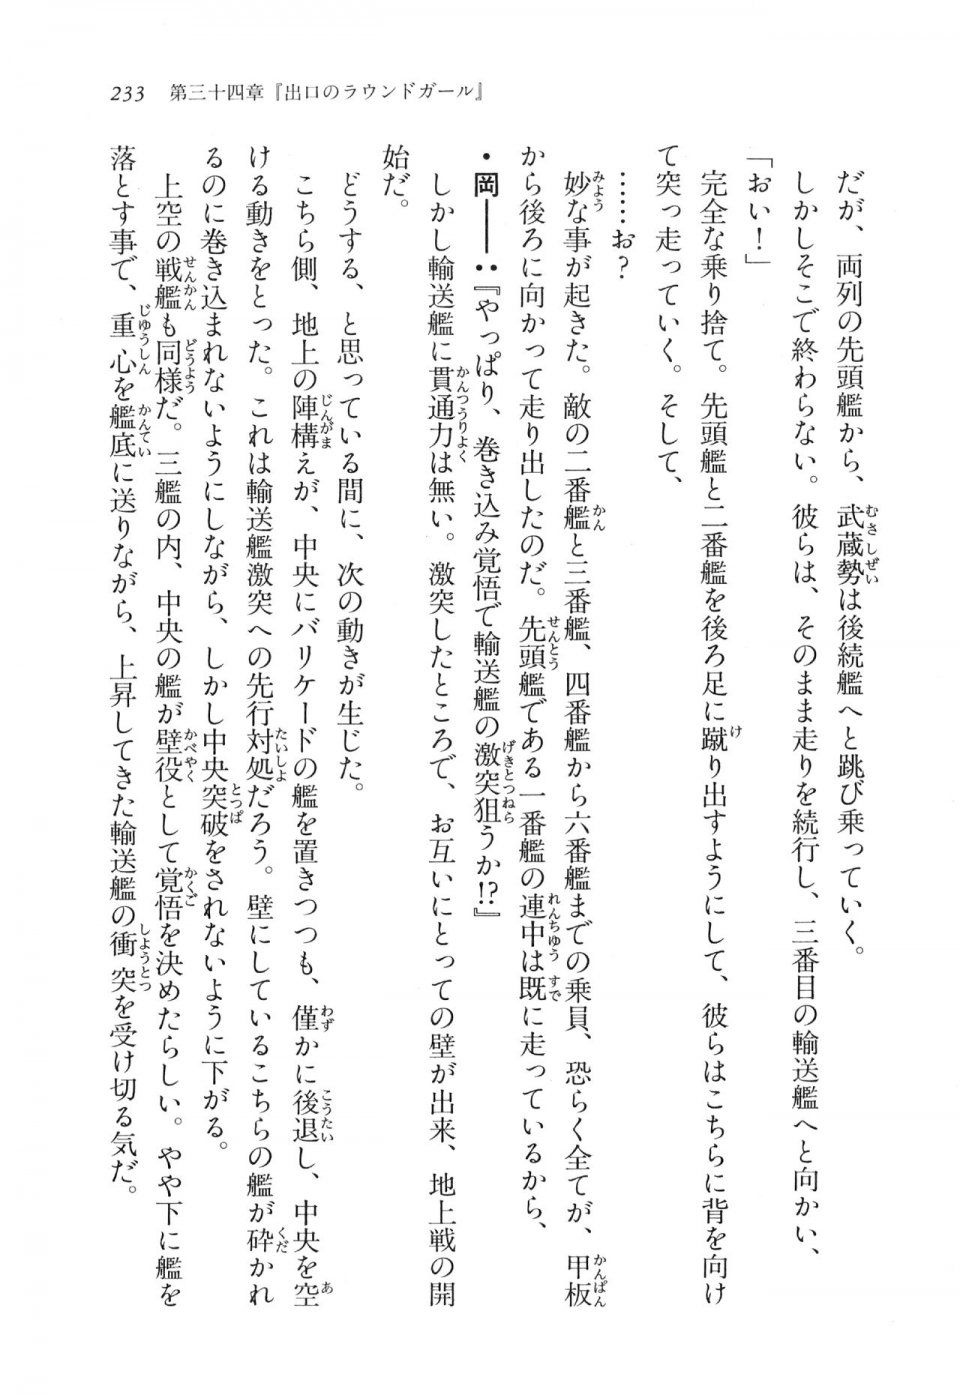 Kyoukai Senjou no Horizon LN Vol 17(7B) - Photo #233